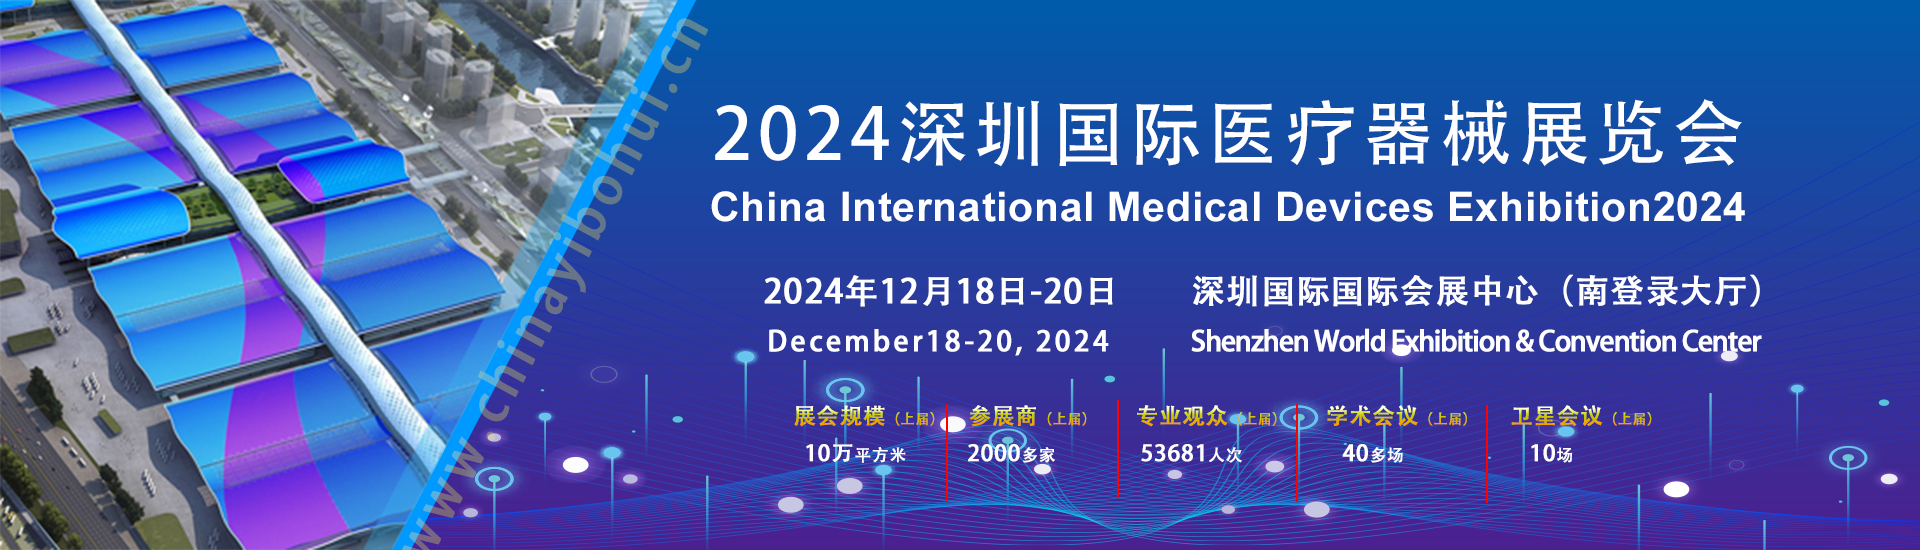 2024深圳国际医疗器械展览会/深圳医博会